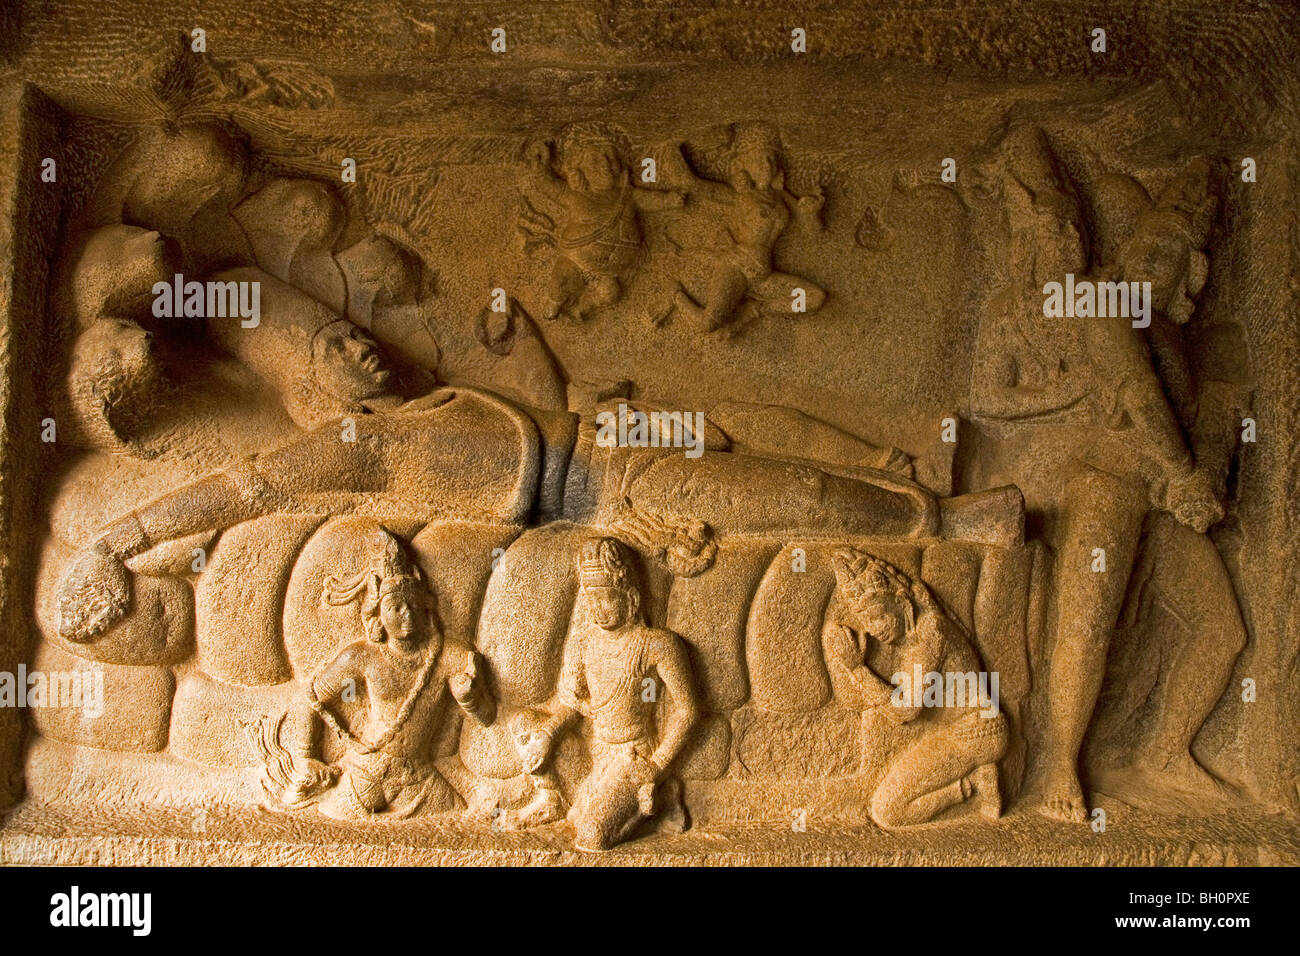 Un bas-relief sculpture dans la ville indienne de Mahabalipuram (Mamallapuram) montre Vishnu repose dans la méditation. Banque D'Images